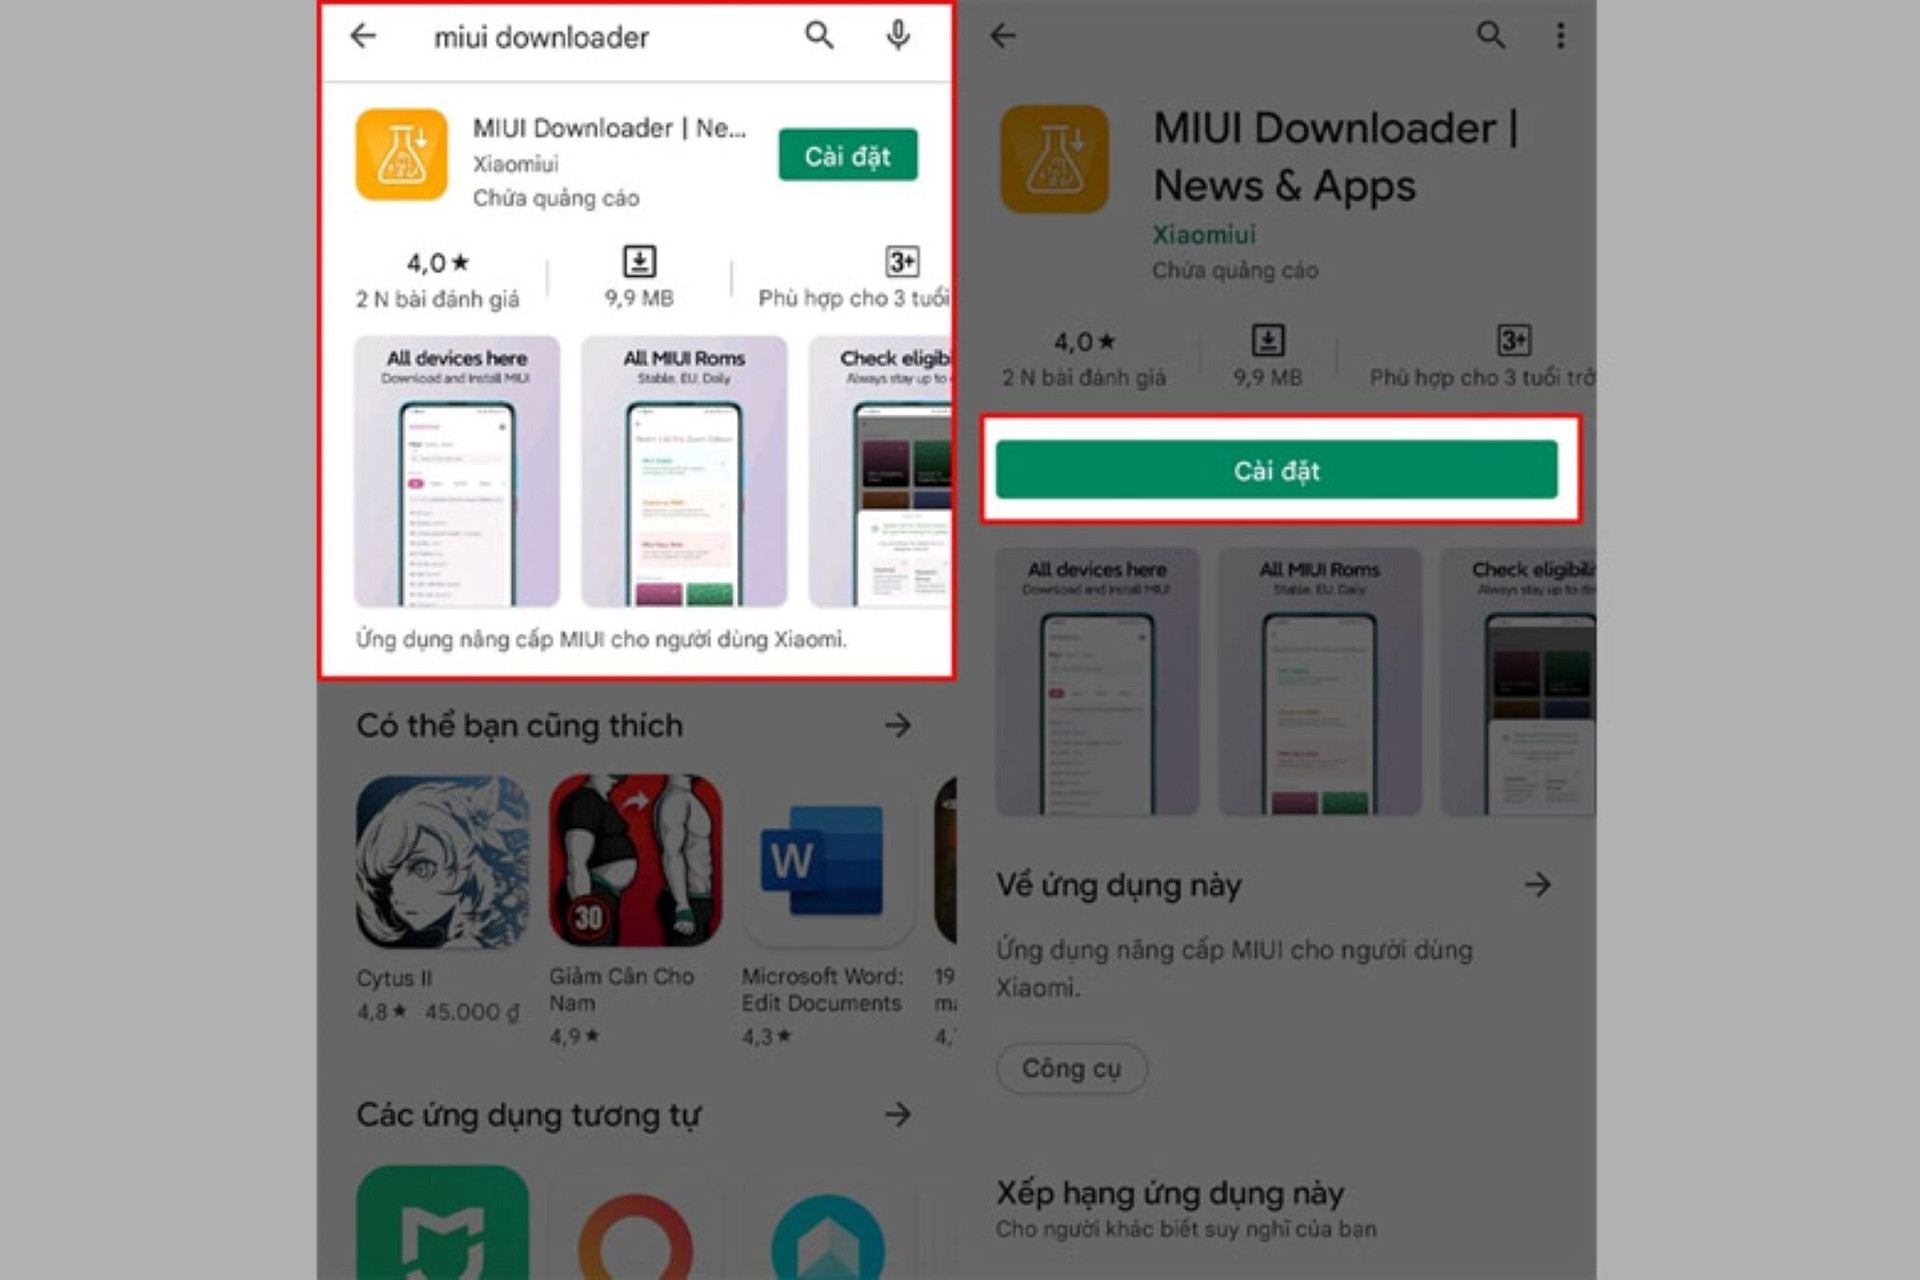 Ứng dụng MIUI Downloader.